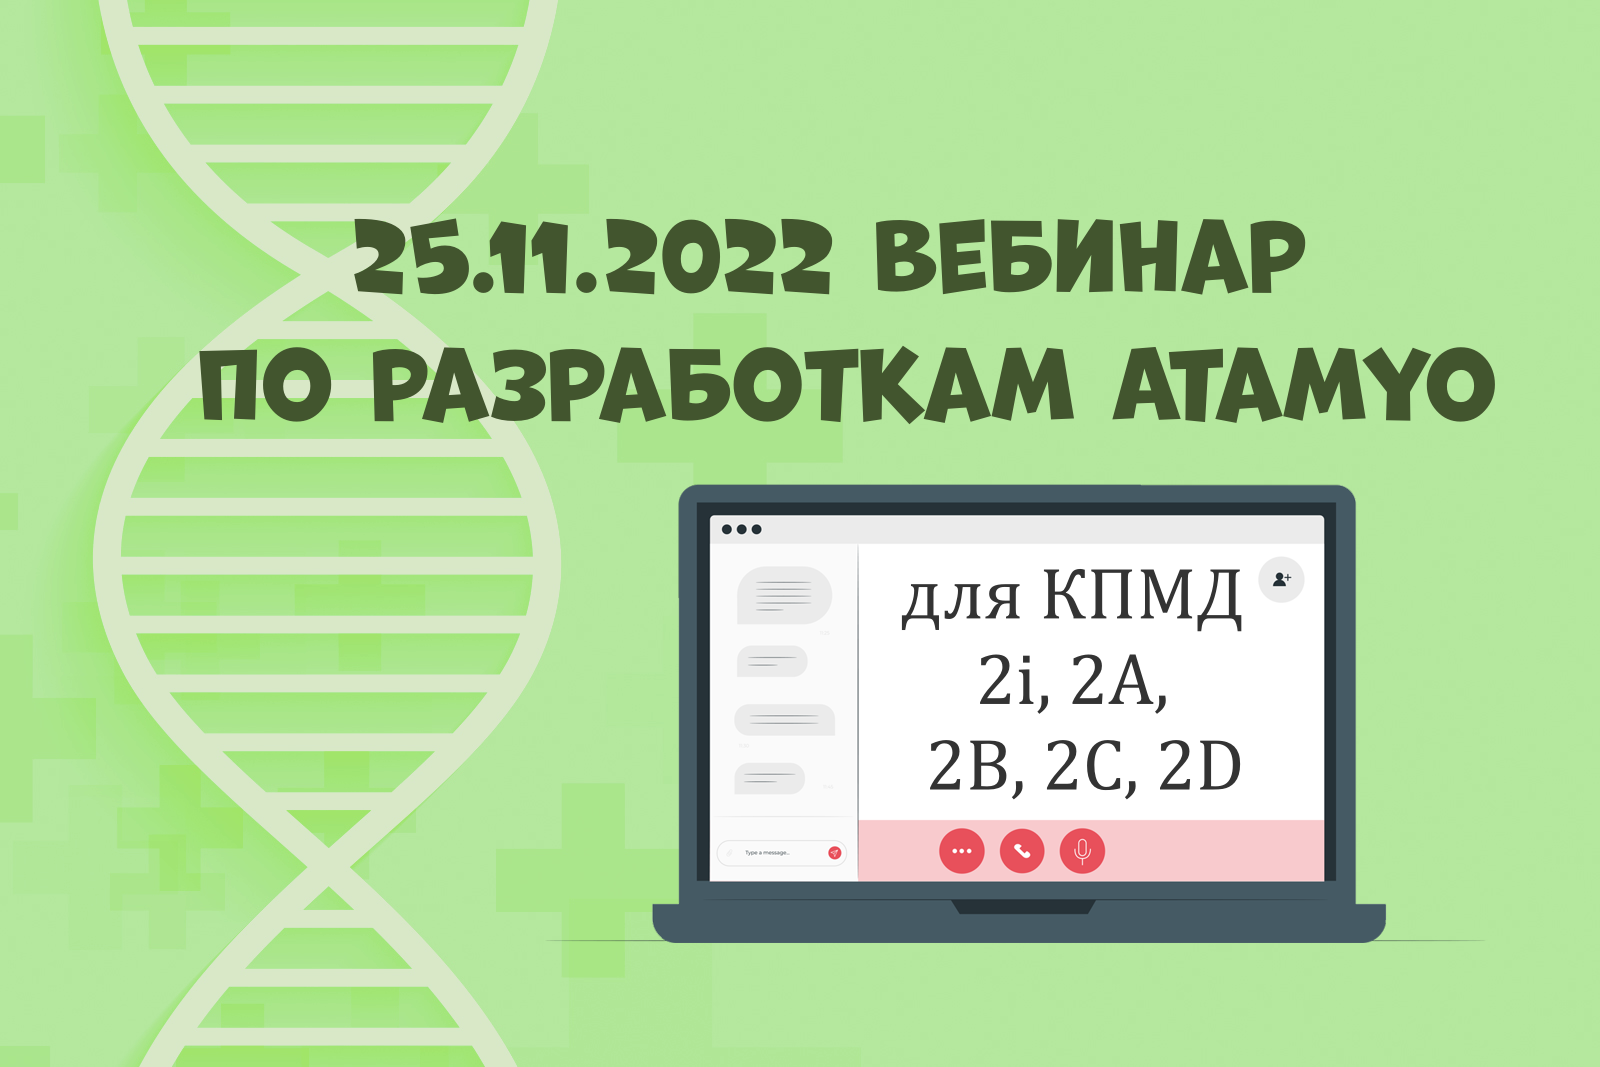 На зелёном фоне с молекулой ДНК изображение ноутбука и надписи "25.11.2022 вебинар по разработкам Atamyo для КПМД 2i, 2A, 2B, 2C, 2D"